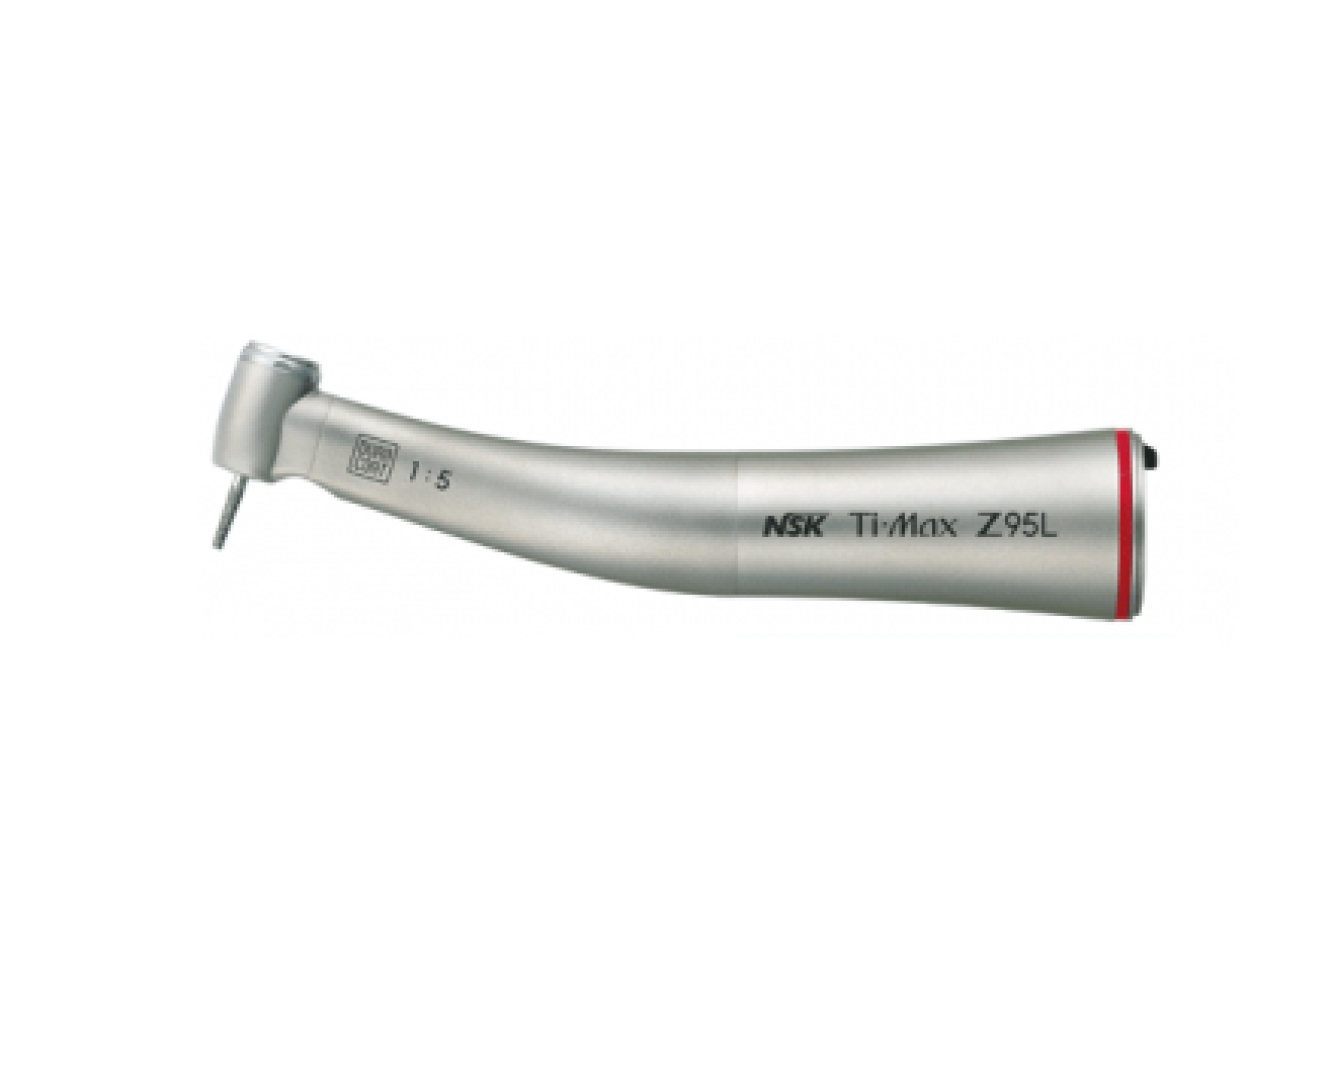 Z95L Стоматологический наконечник угловой повышающий 1:5, четырёхточечный спрей, для турбинных боров, NSK (Япония)